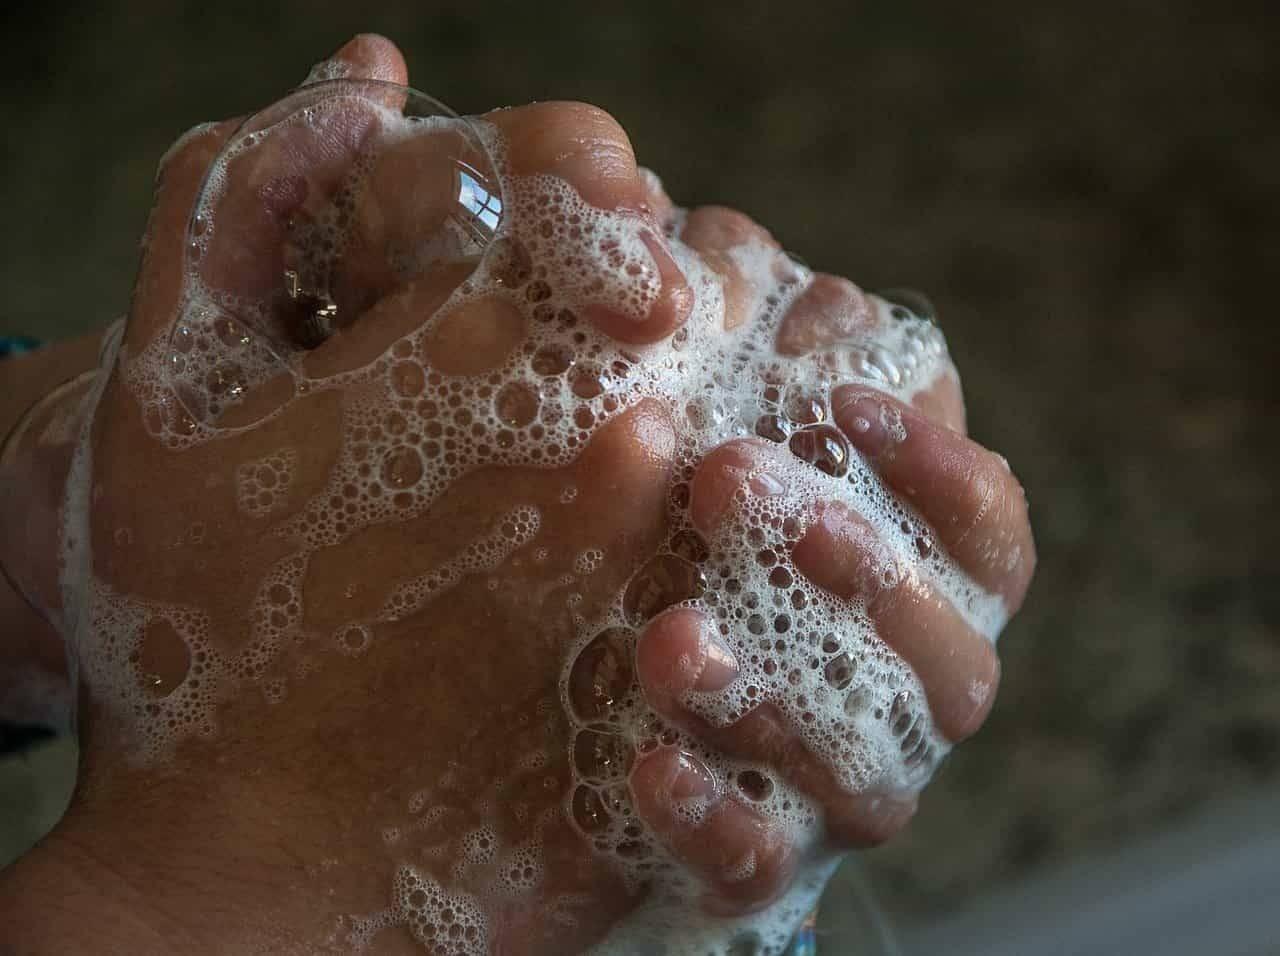 Öfter Hände waschen beim Wohnungsumzug